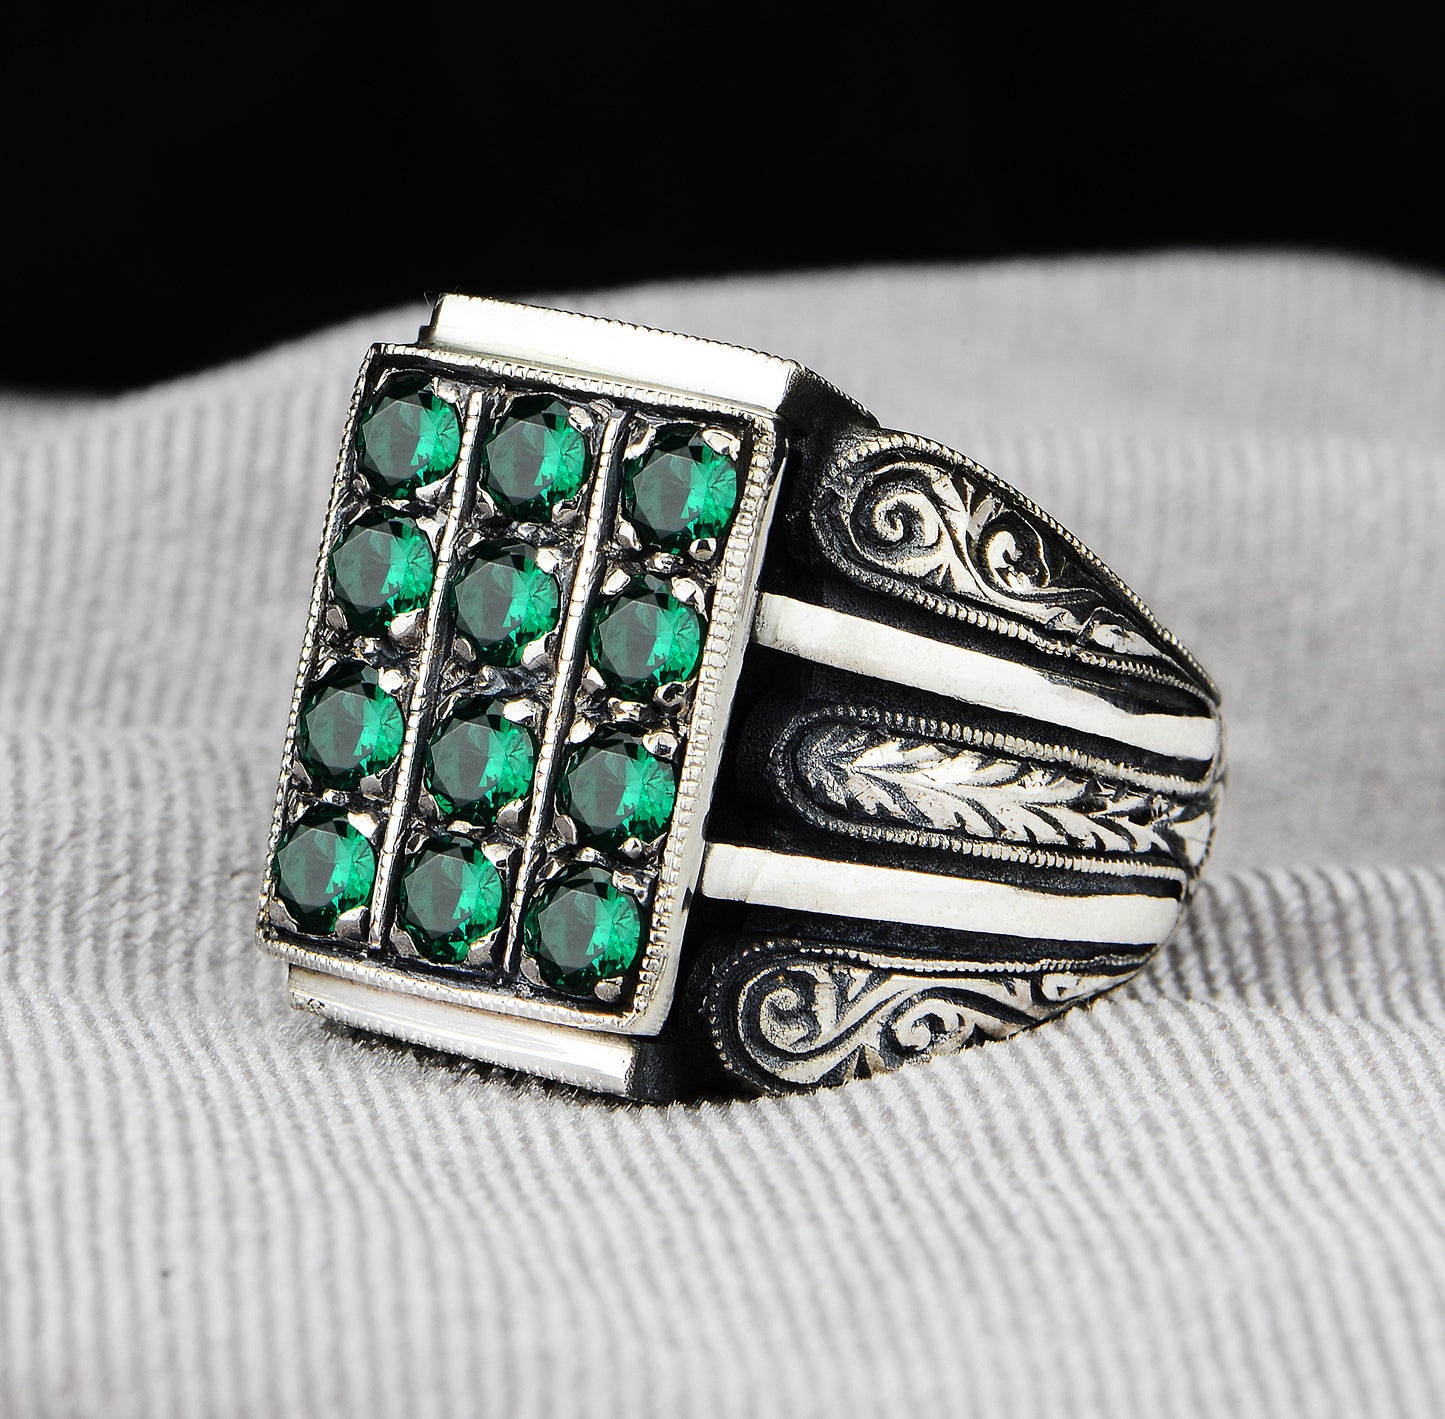 Herren-Smaragd-Ring mit handgraviertem Mikrostein